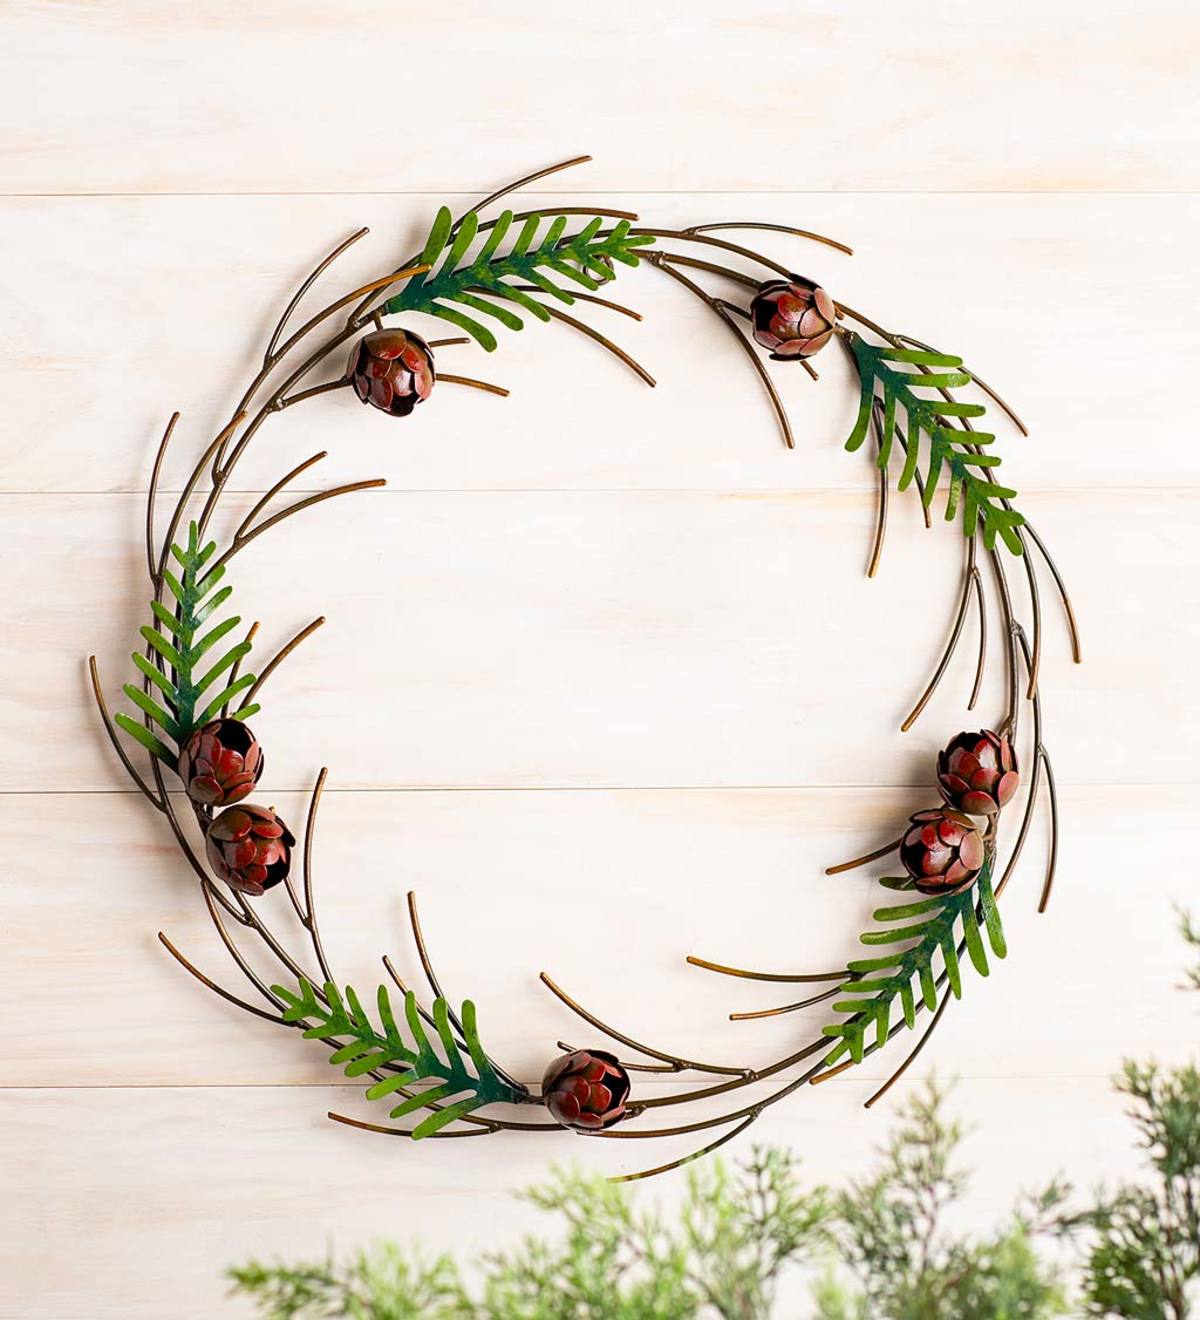 Handcrafted Metal Pine Branches and Pinecones Indoor/Outdoor Wreath